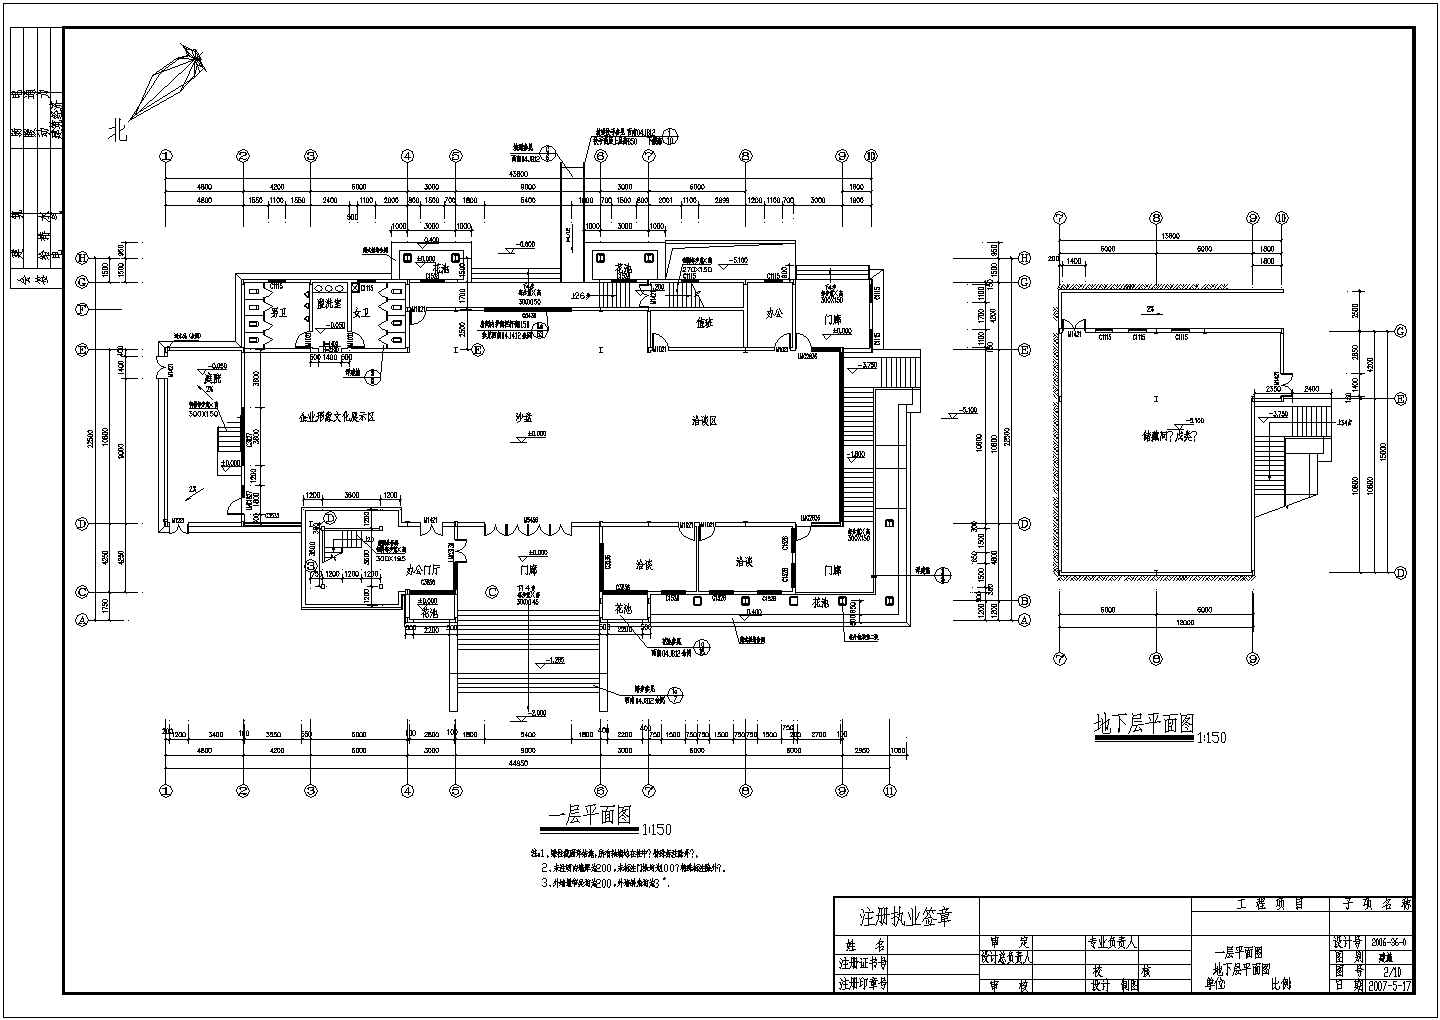 1565平方米某公司钢框架结构展厅建筑结构设计施工图